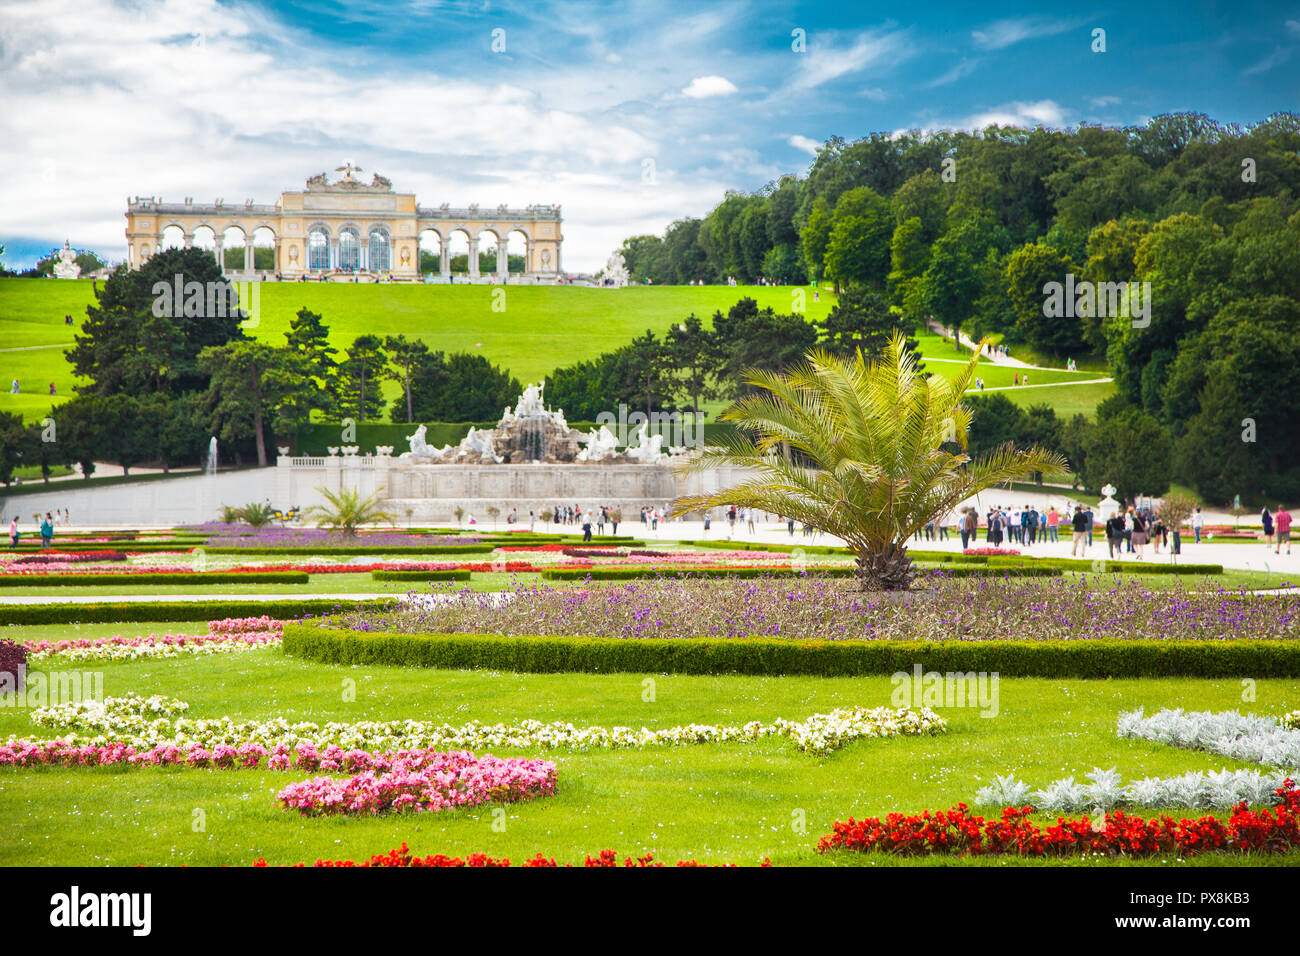 Visualizzazione classica del famoso Palazzo di Schonbrunn con scenic grande parterre giardino in una bella giornata di sole con cielo blu e nuvole in estate, Vienna Foto Stock